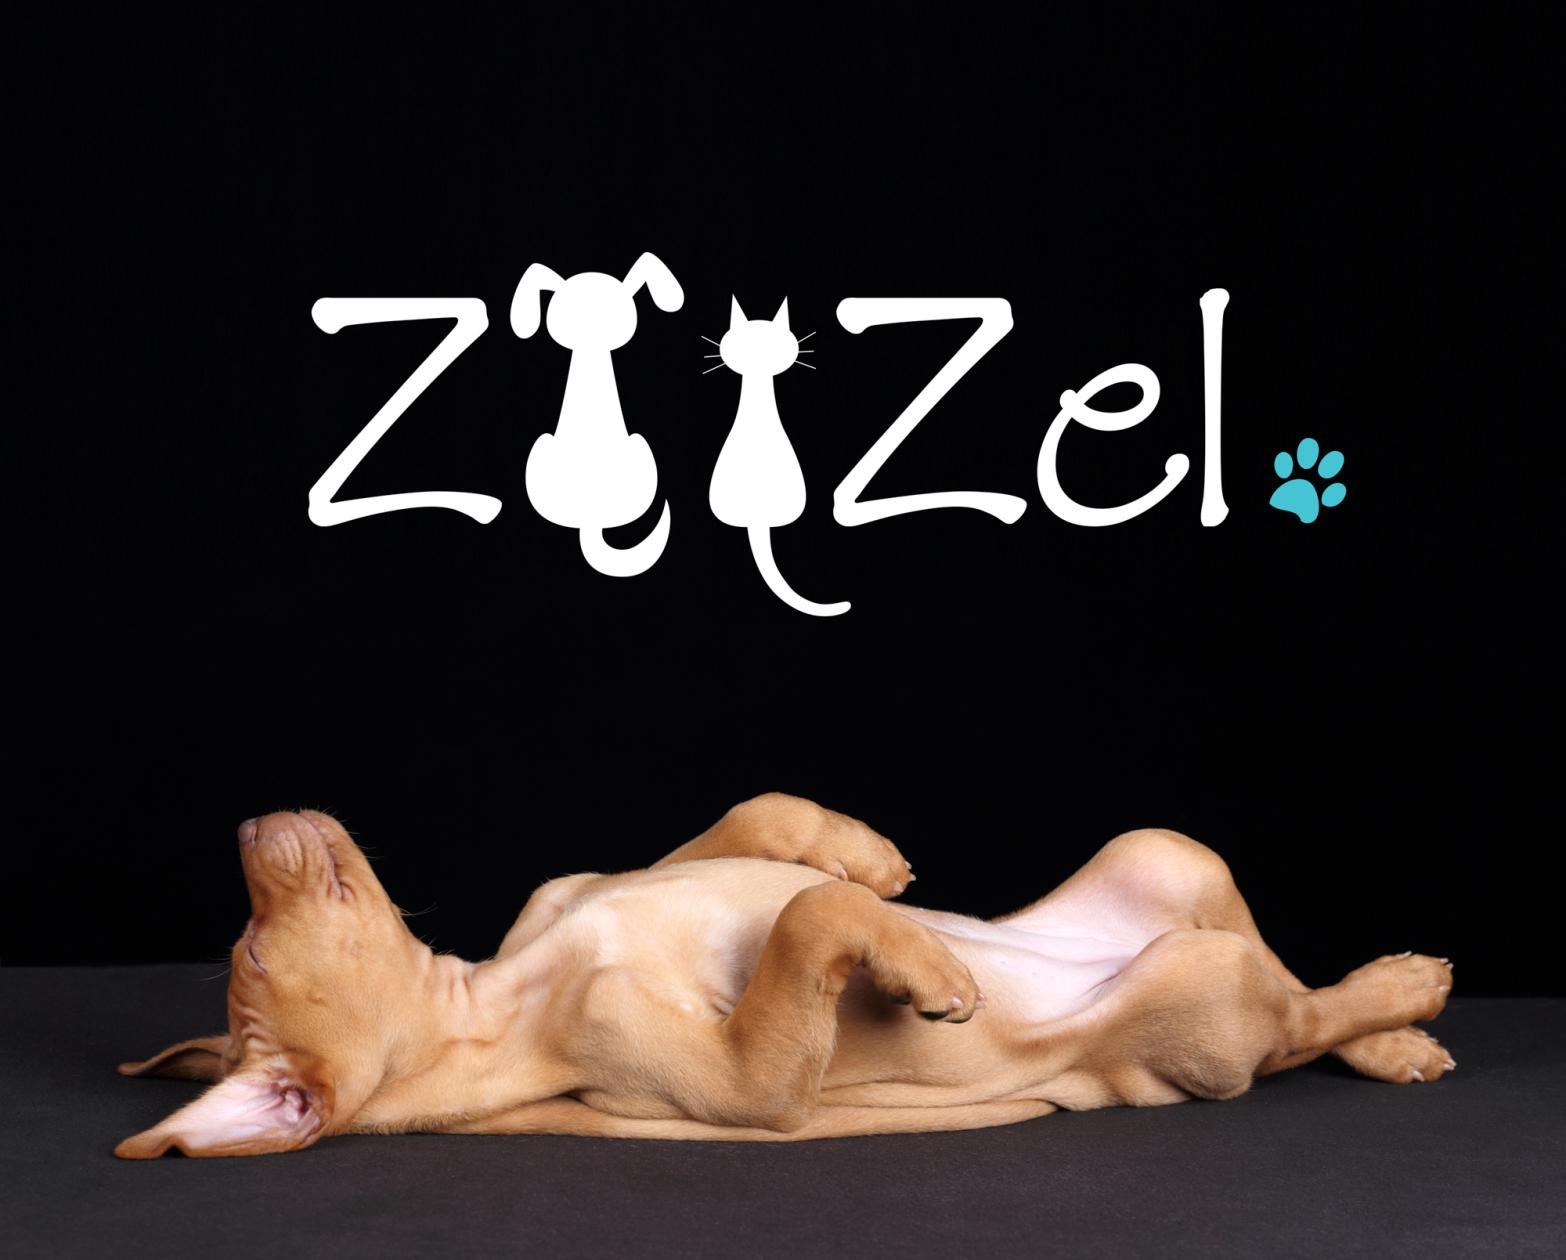 Zoozel